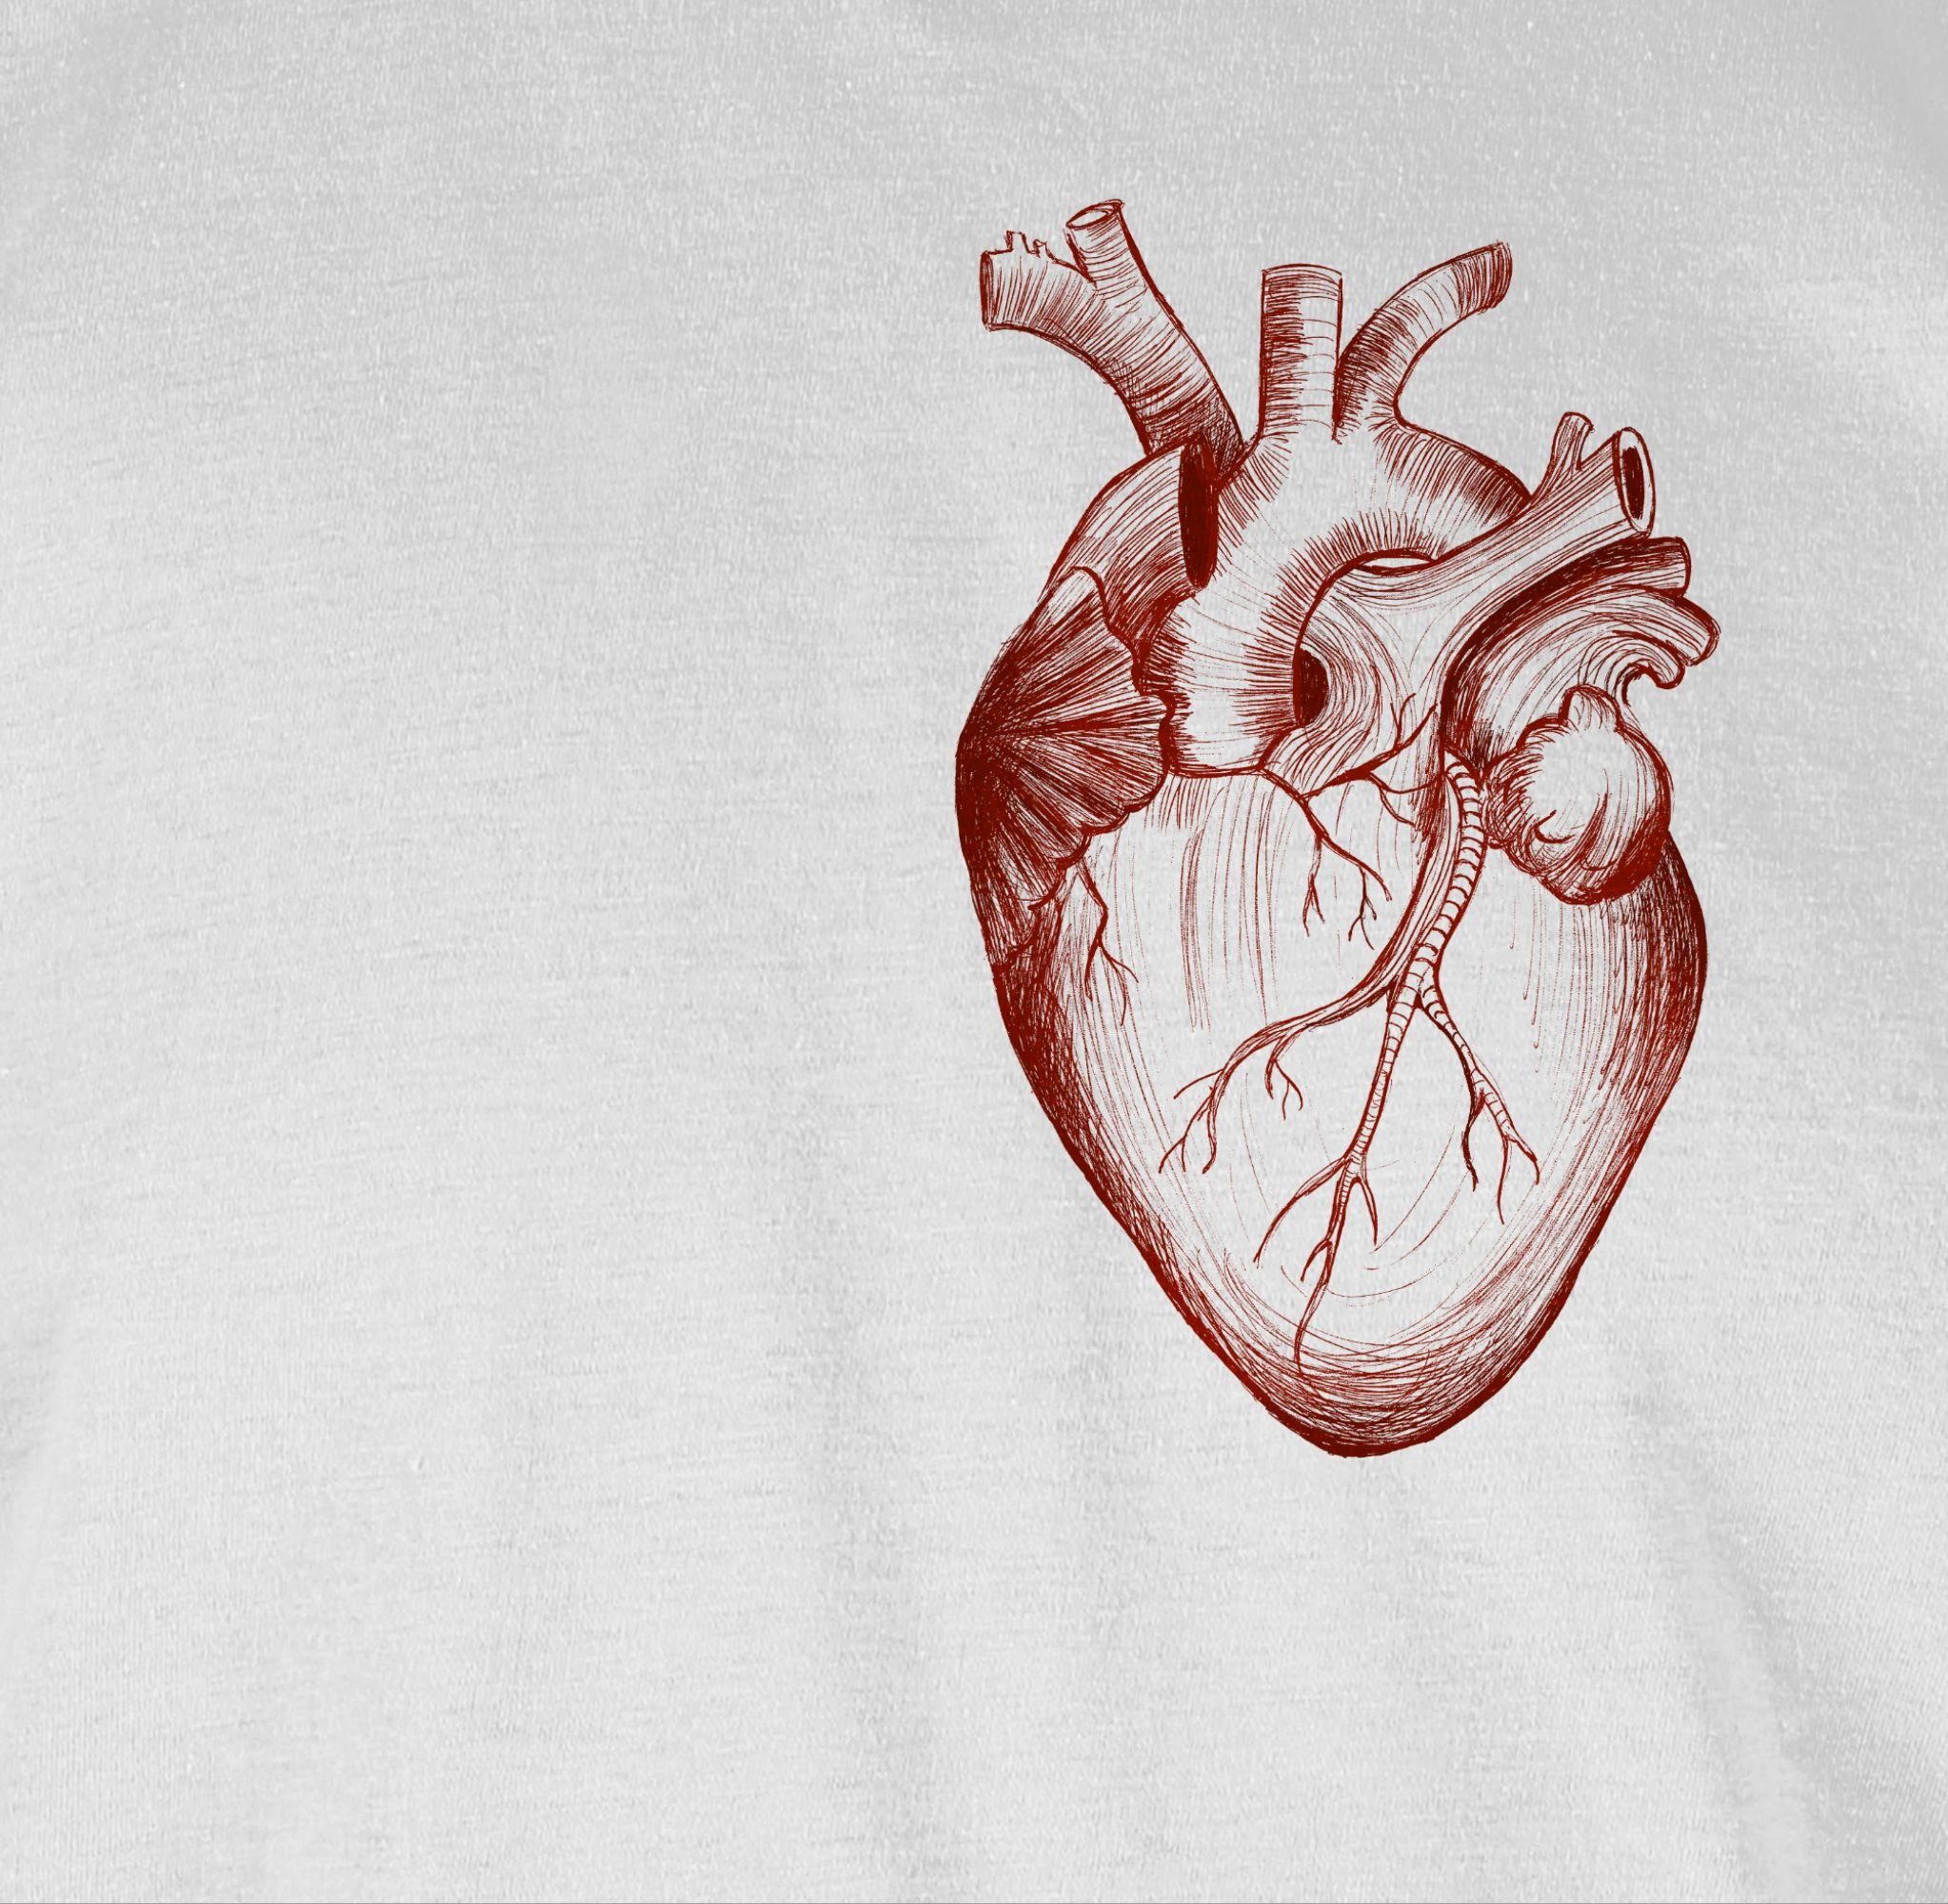 Geschenke T-Shirt Shirtracer Anatomie 01 Weiß Nerd Herz